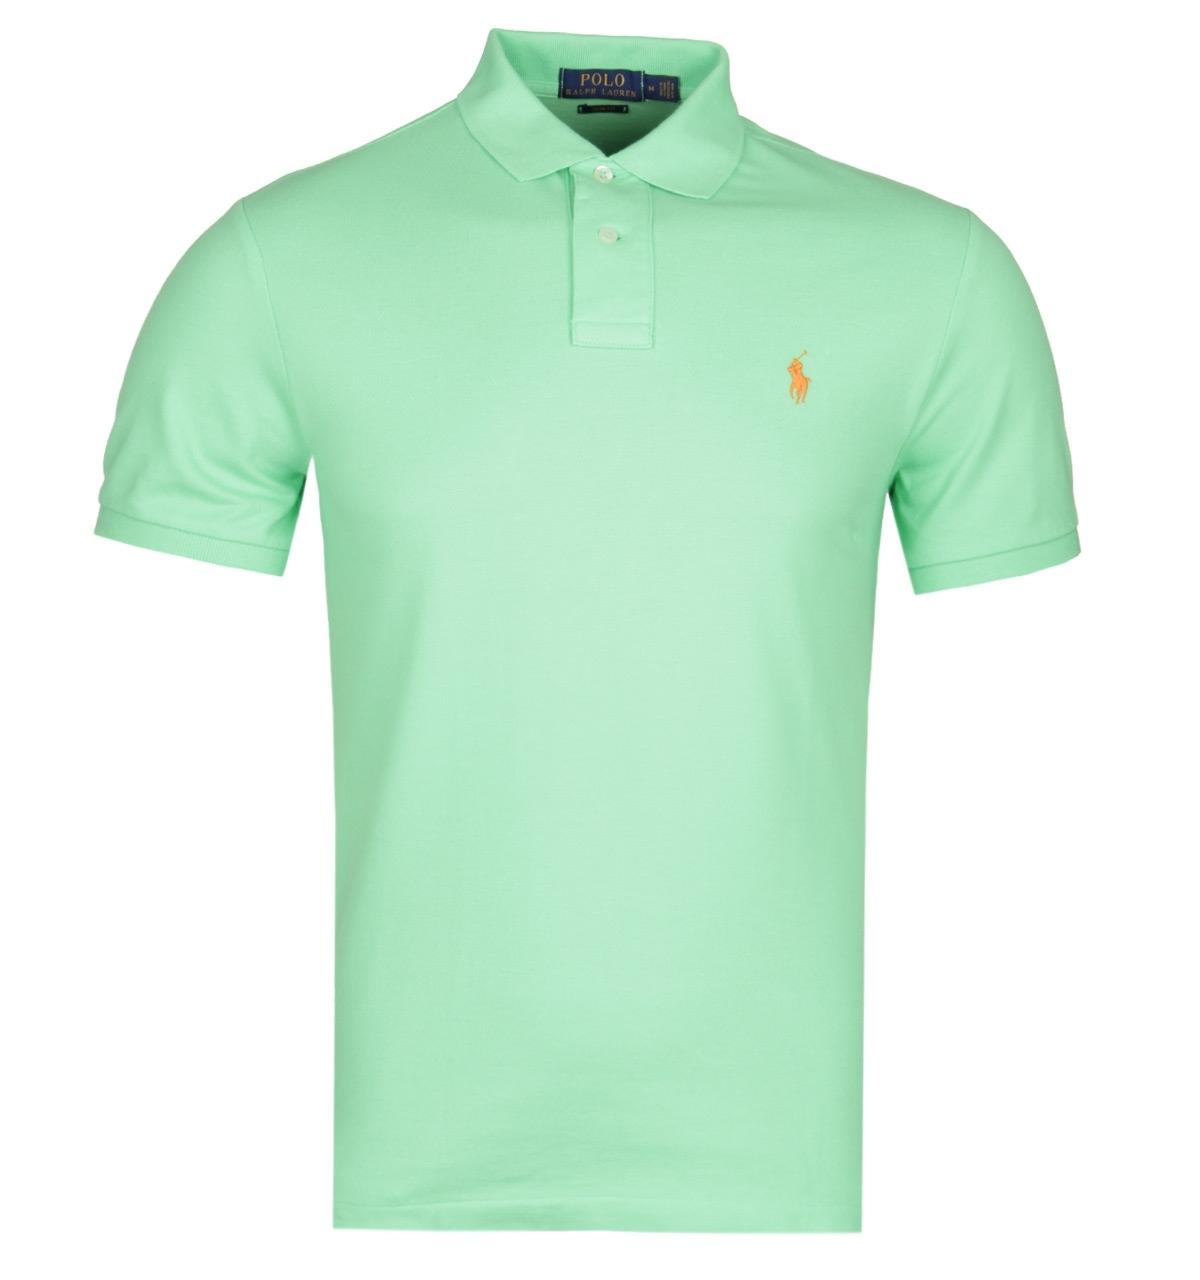 Buy > neon green ralph lauren polo shirt > in stock